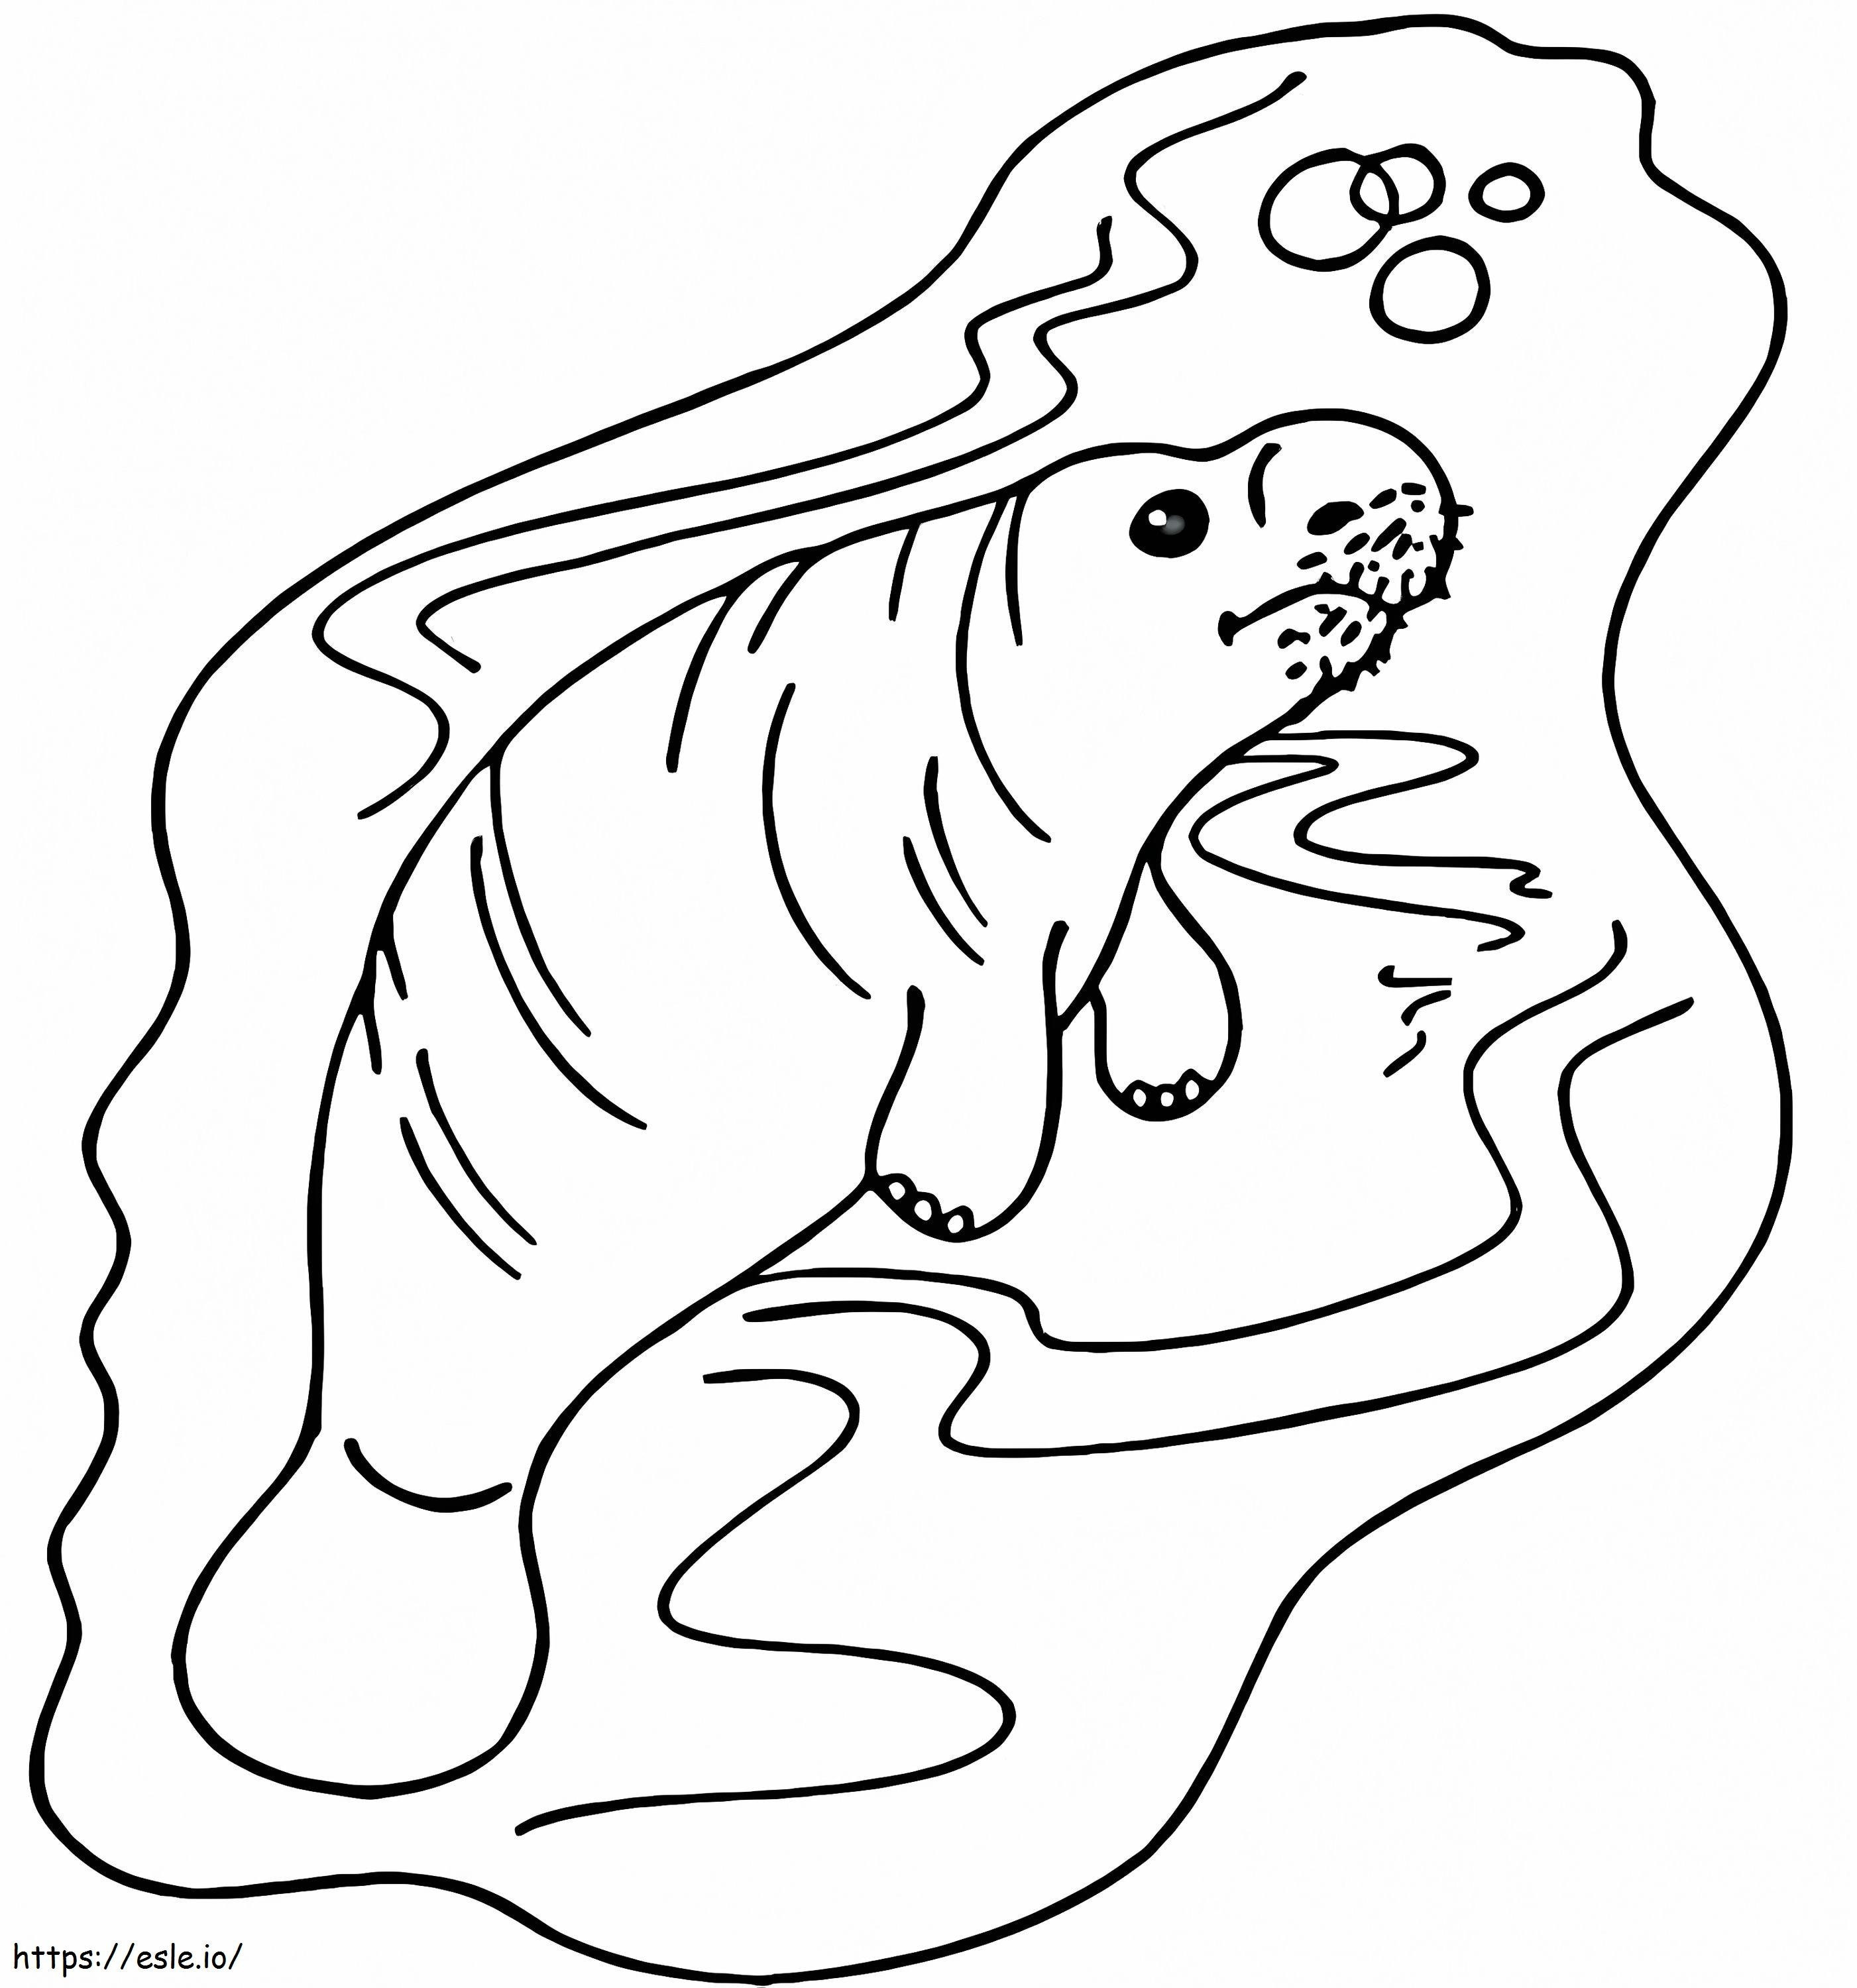 Înot lamantin de colorat